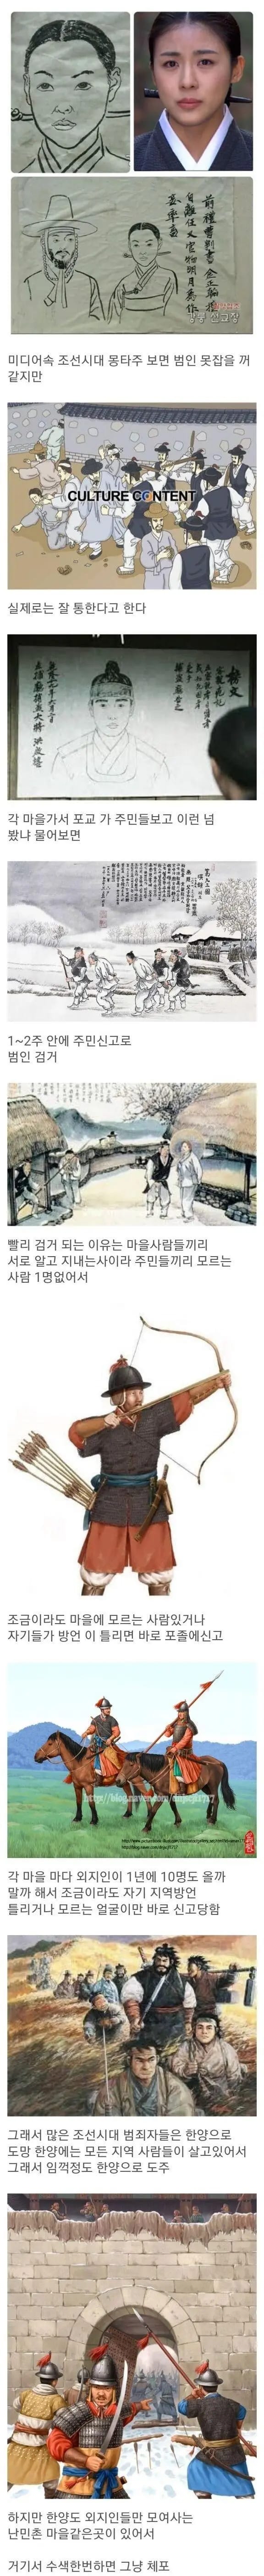 조선시대 범인 검거율이 높은이유